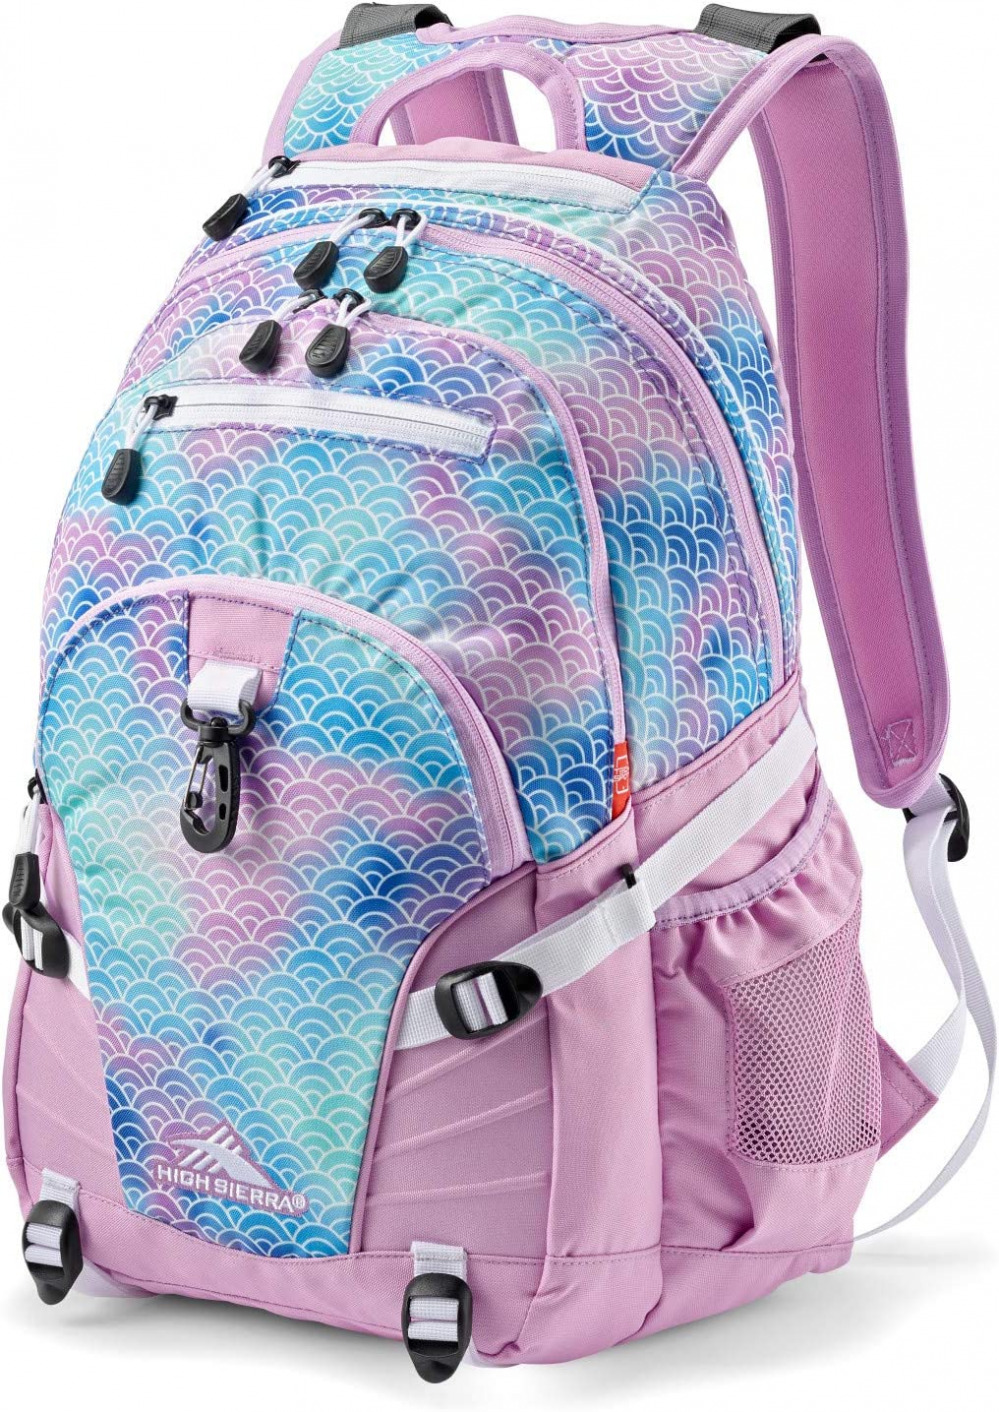 High Sierra Loop-Backpack, School, Travel, or Work One Size, Rainbow Scales 